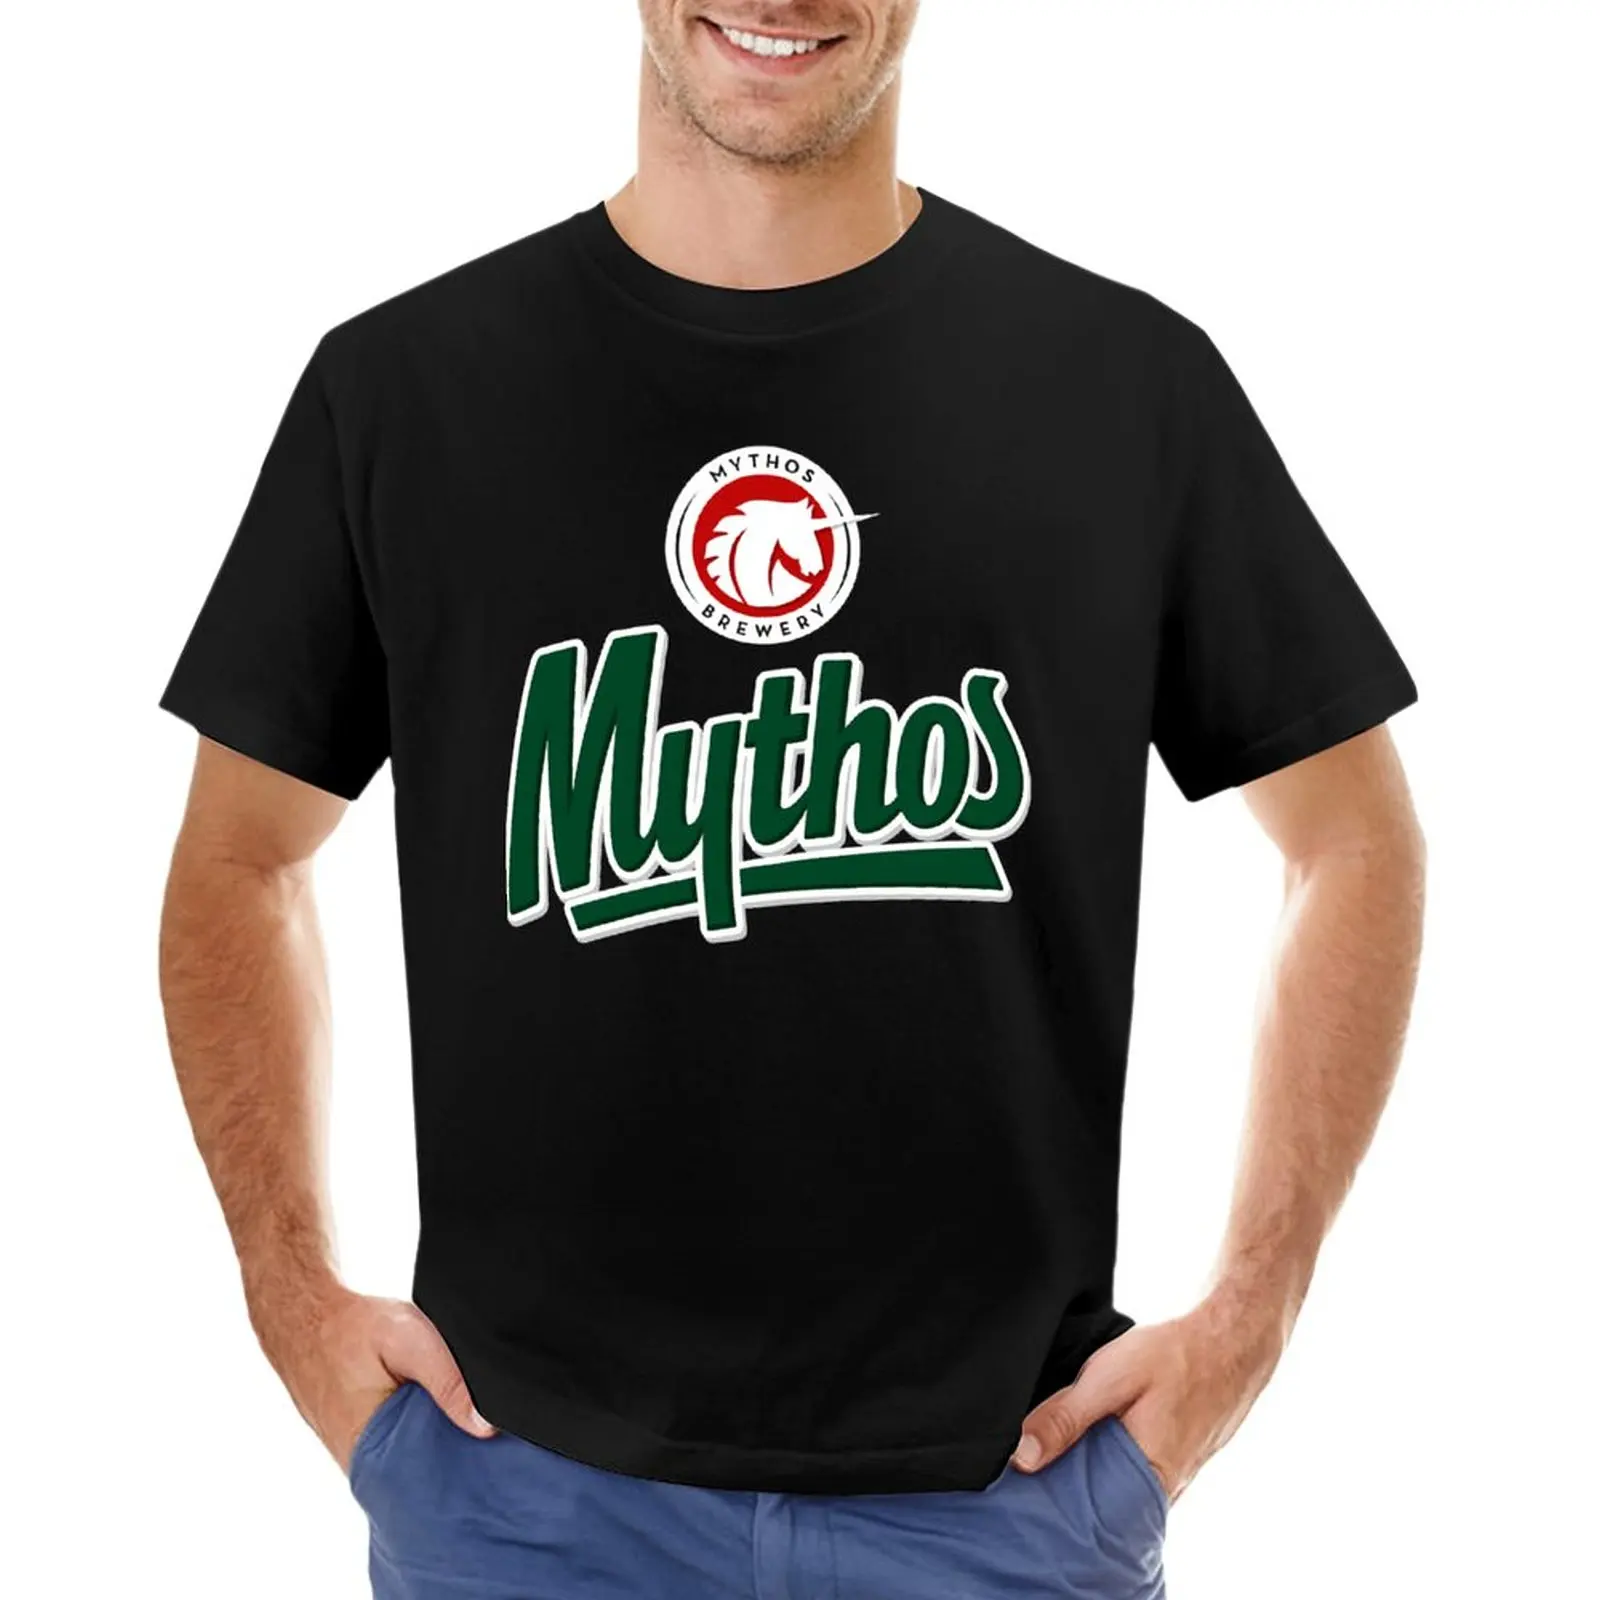 Футболка Mythos-beer, эстетичная одежда, мужская одежда, летние топы, одежда для мужчин